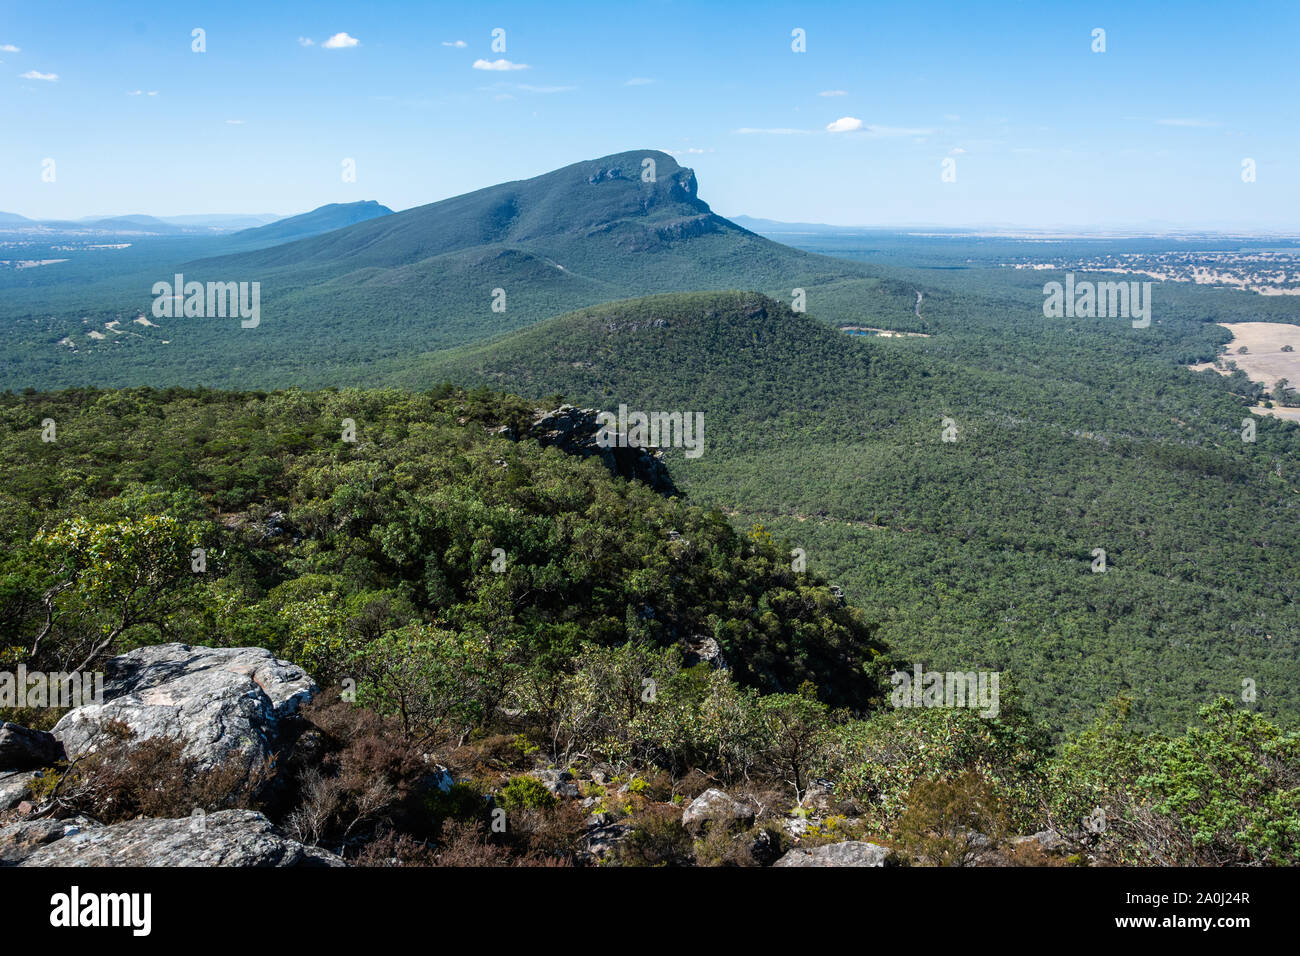 View of Mt Abrupt in the Grampians region of Victoria, Australia. Stock Photo